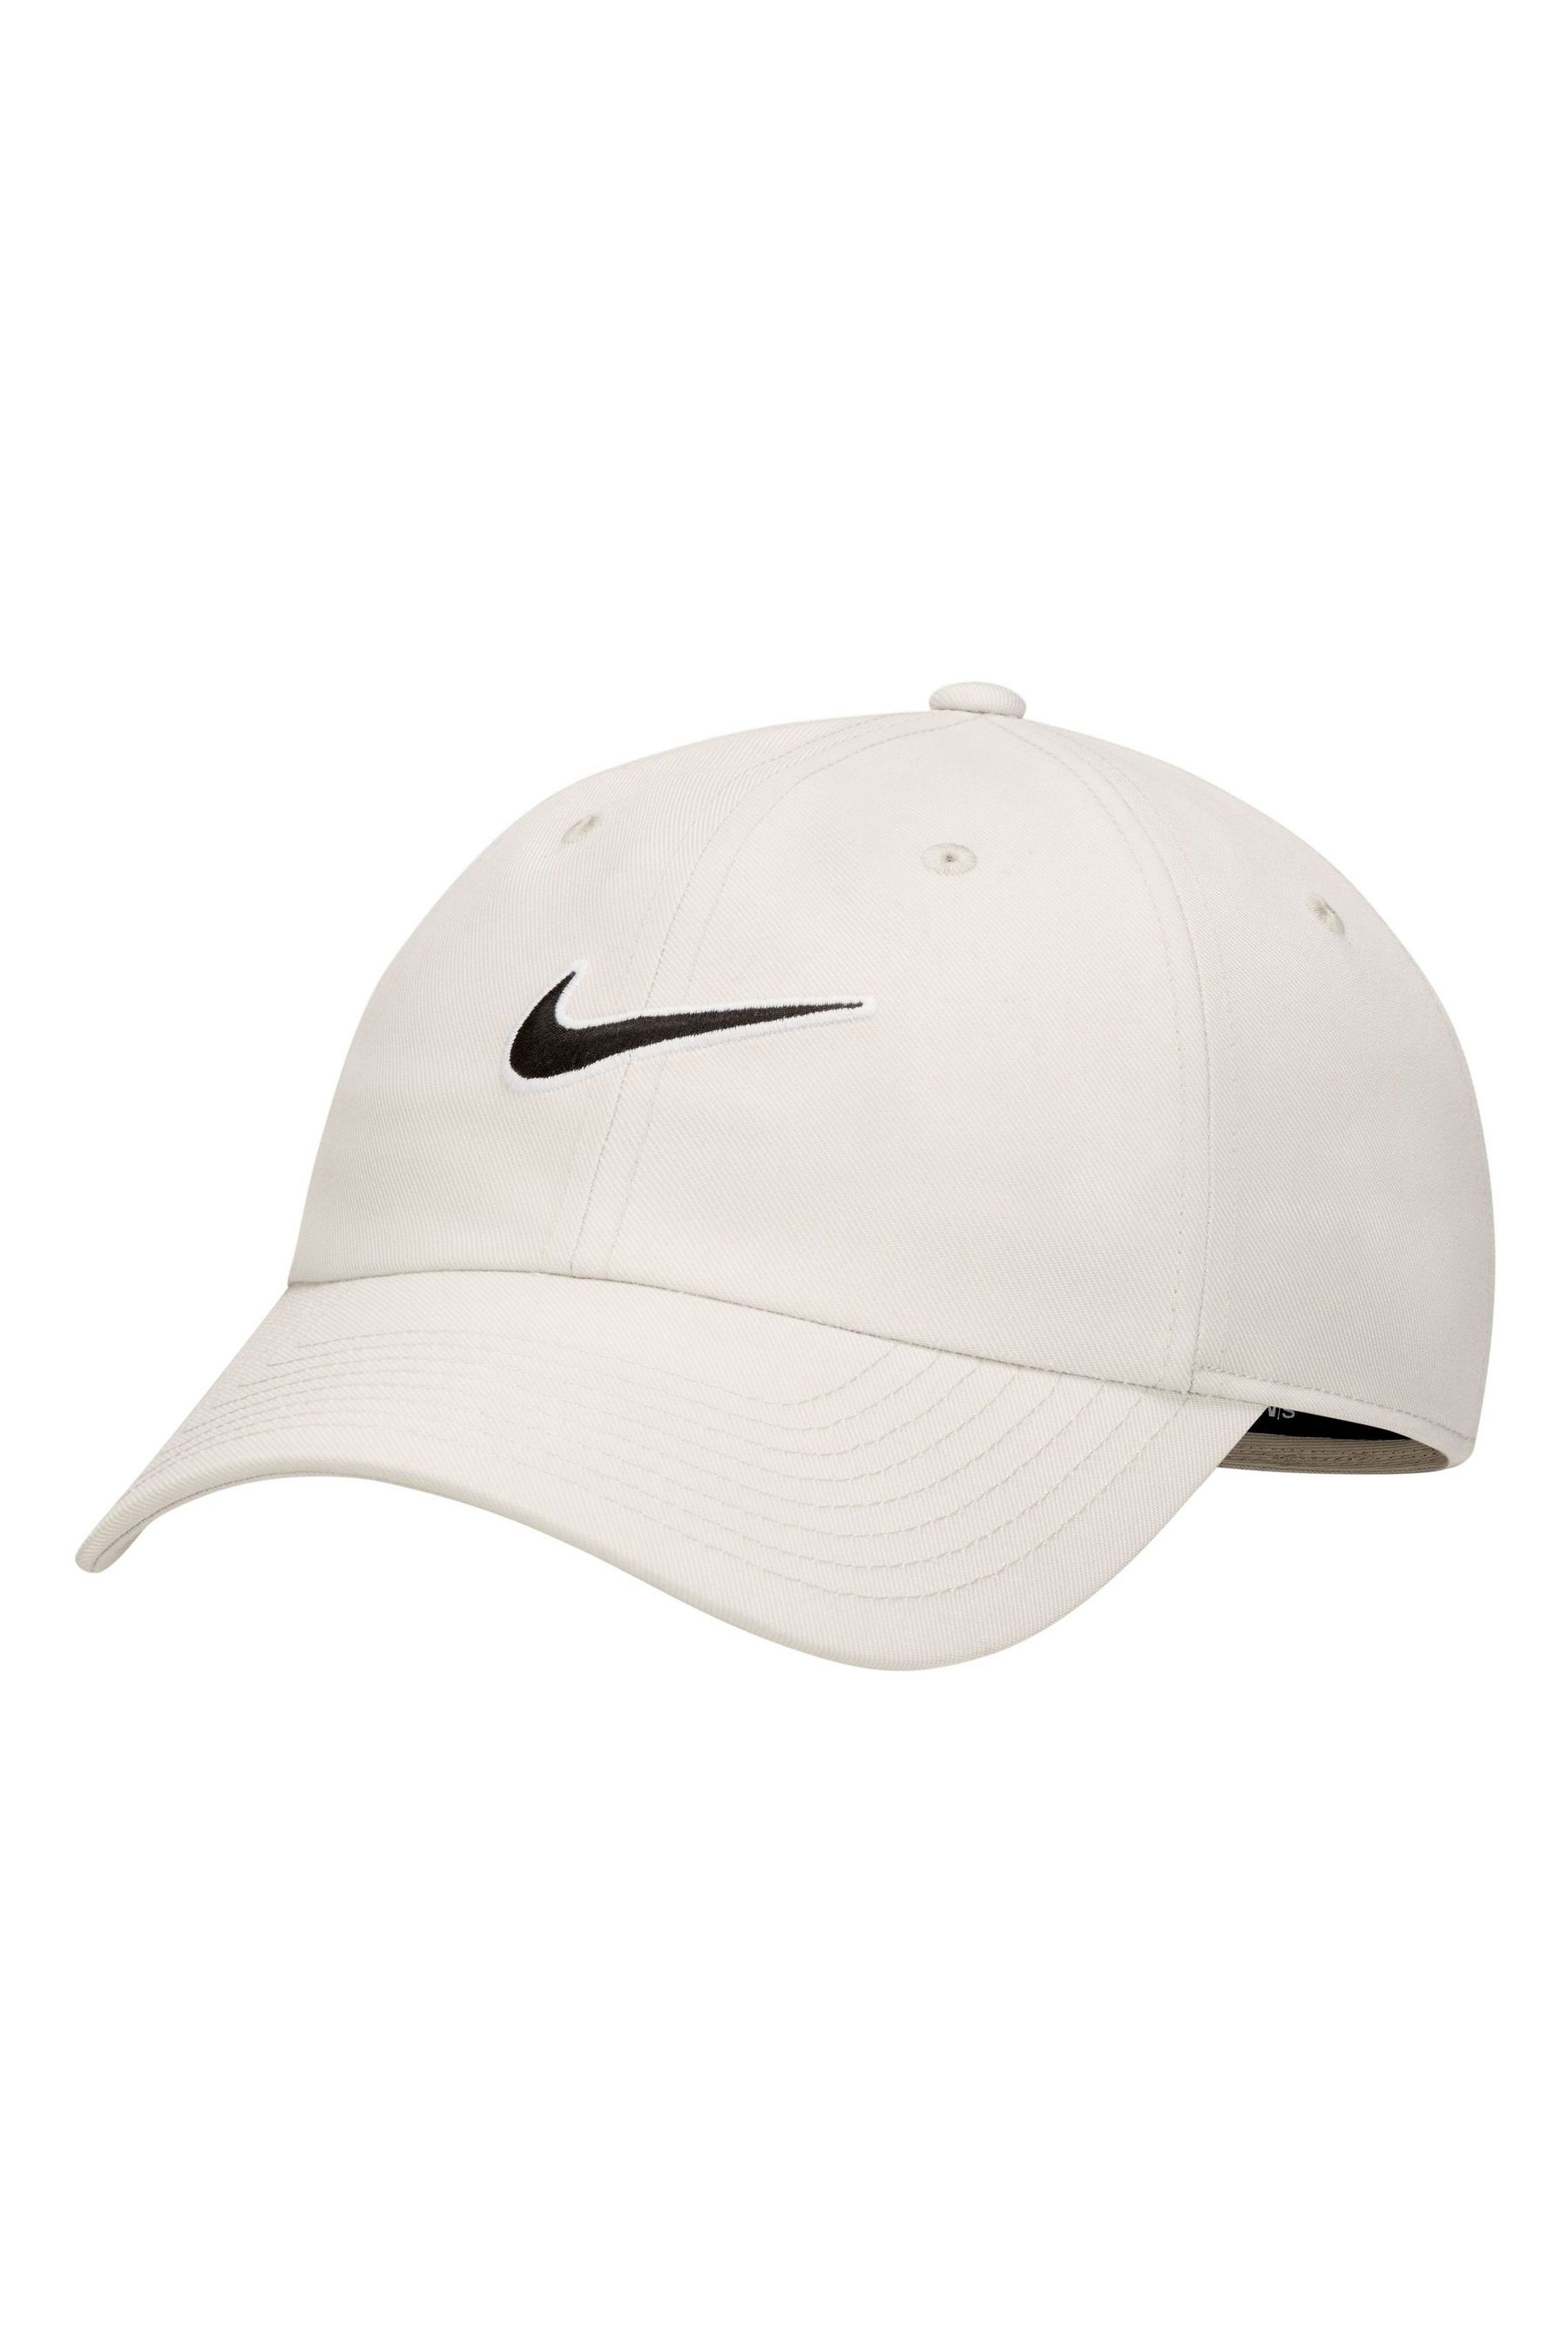 Клубная неструктурированная кепка с галочкой Nike, белый